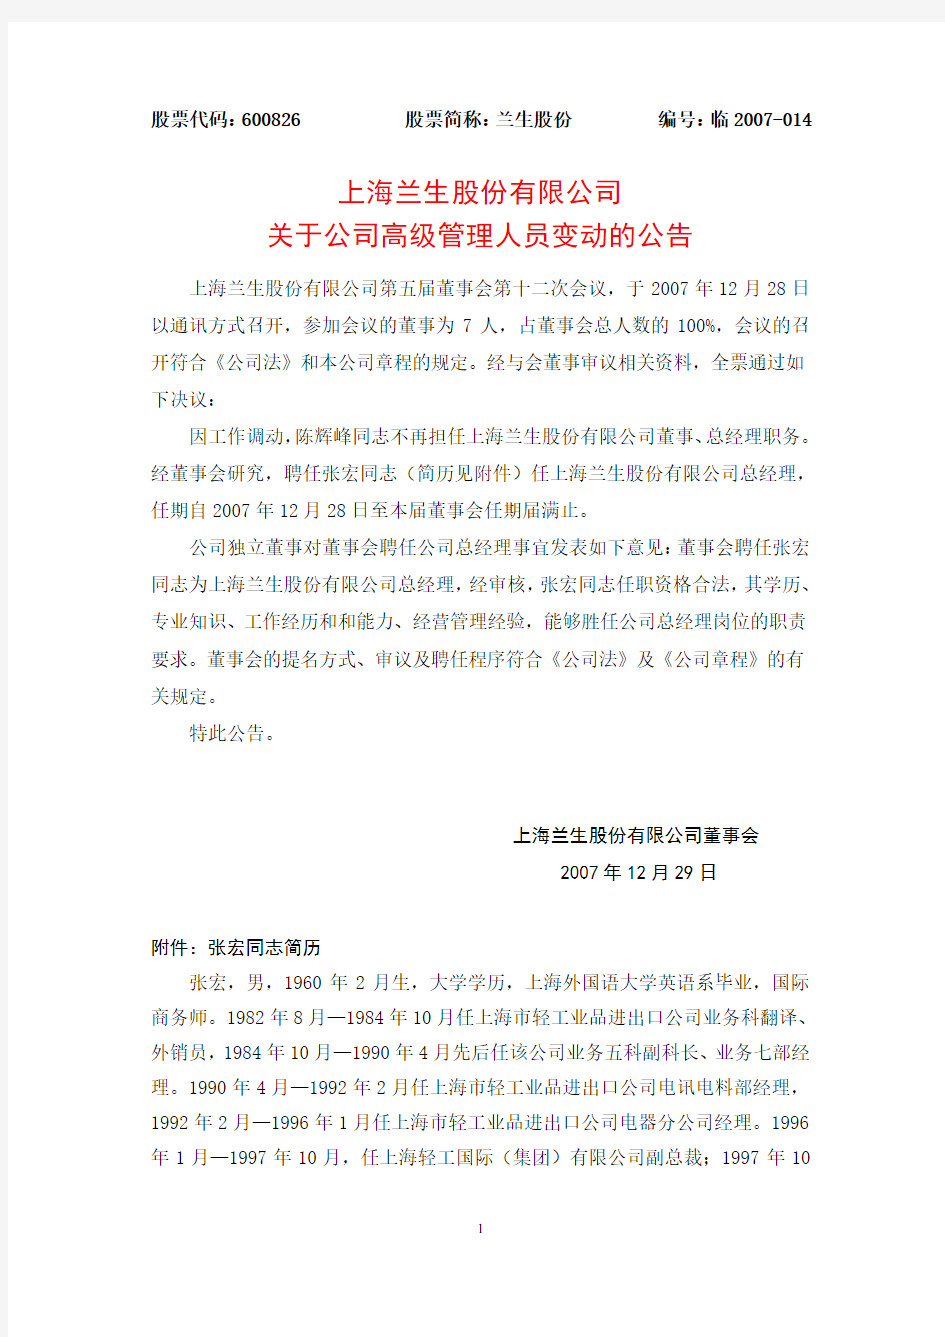 上海兰生股份有限公司关于公司高级管理人员变动的公告